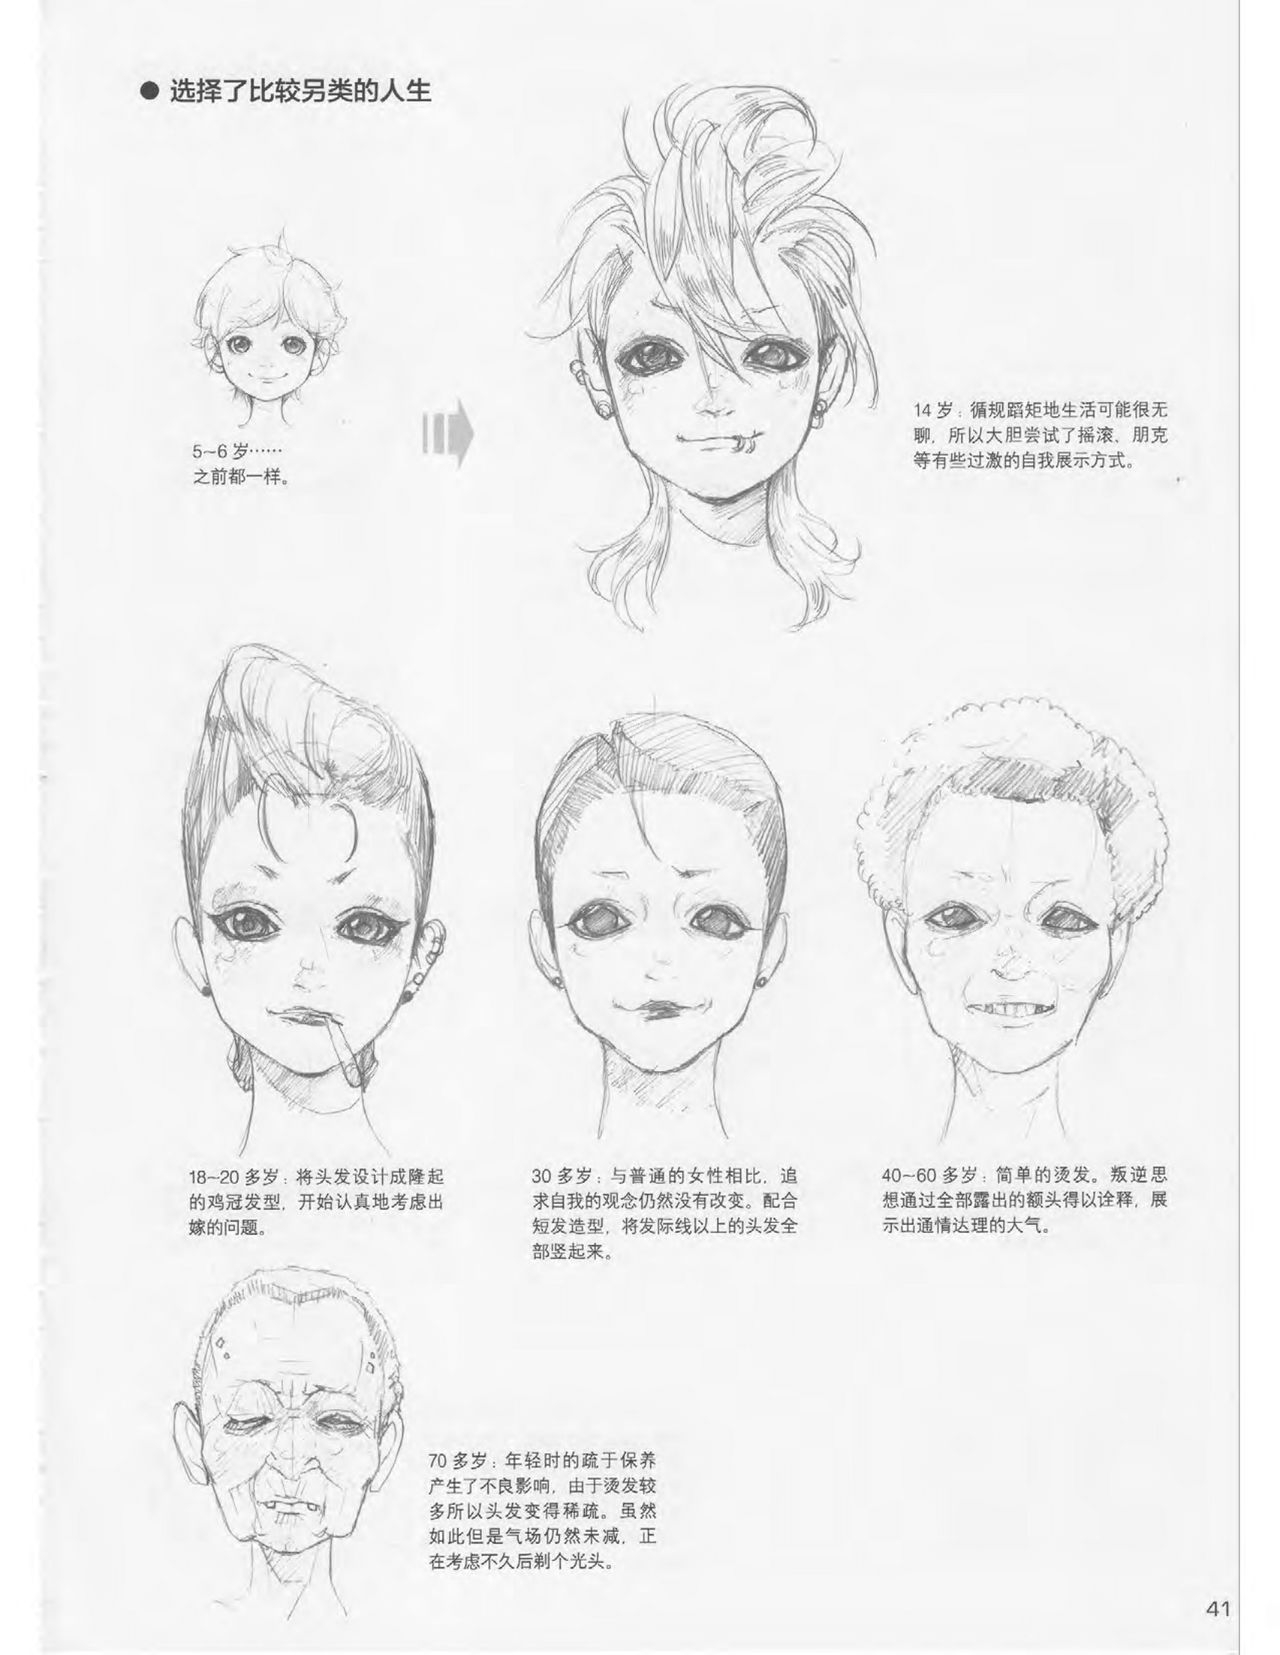 Japanese Manga Master Lecture 3: Lin Akira and Kakumaru Maru Talk About Glamorous Character Modeling 41